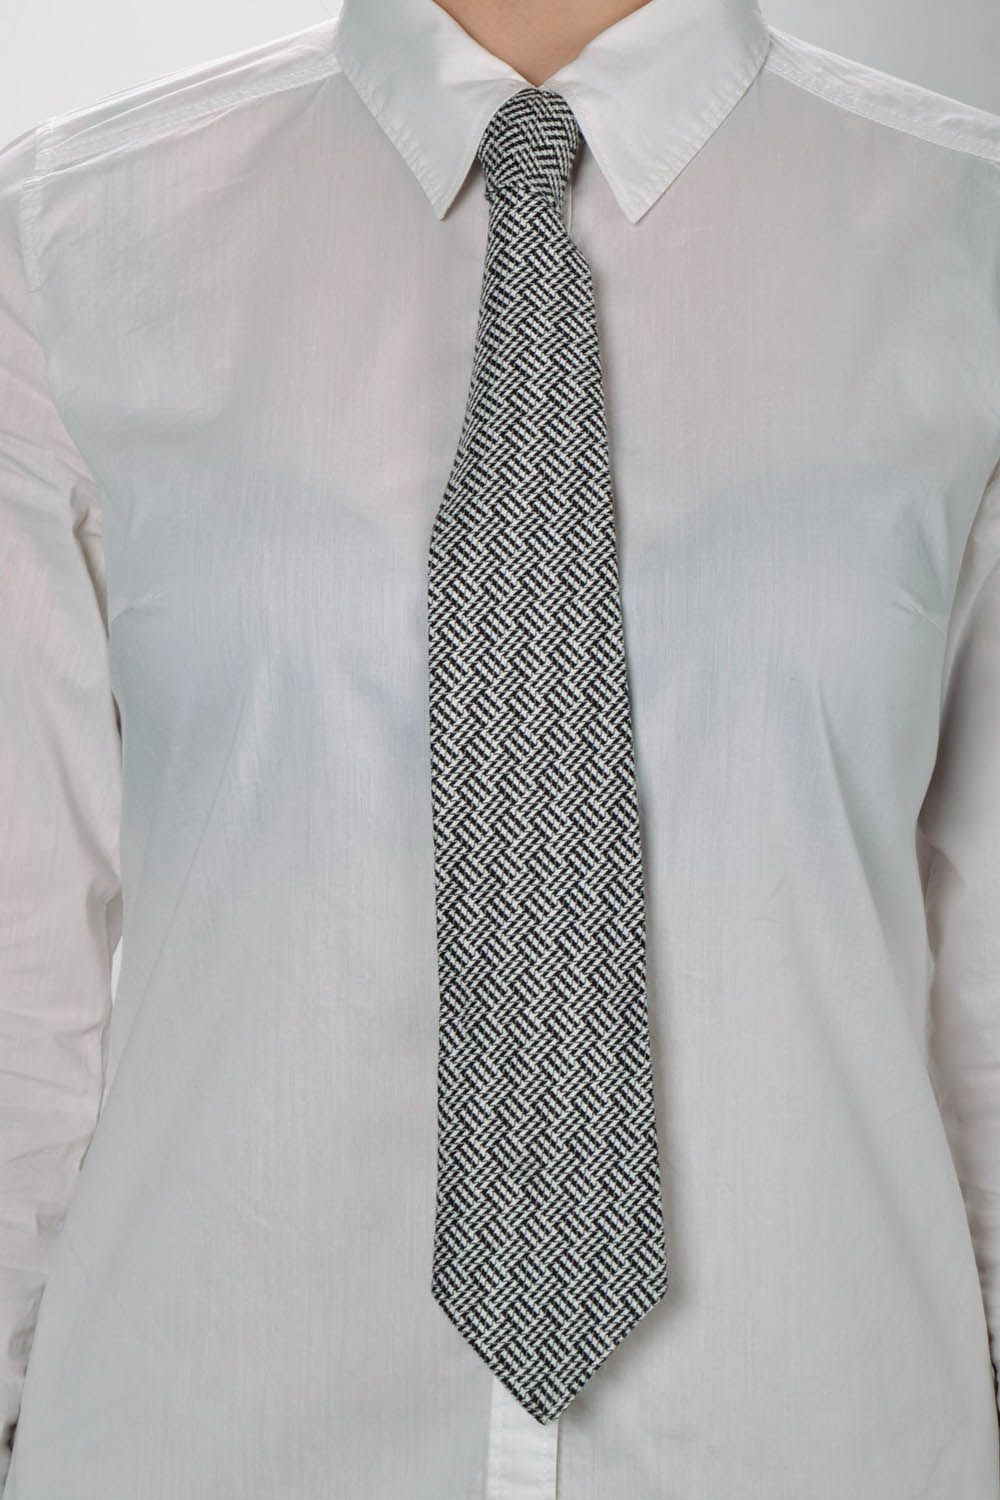 Cravate grise faite main originale photo 5